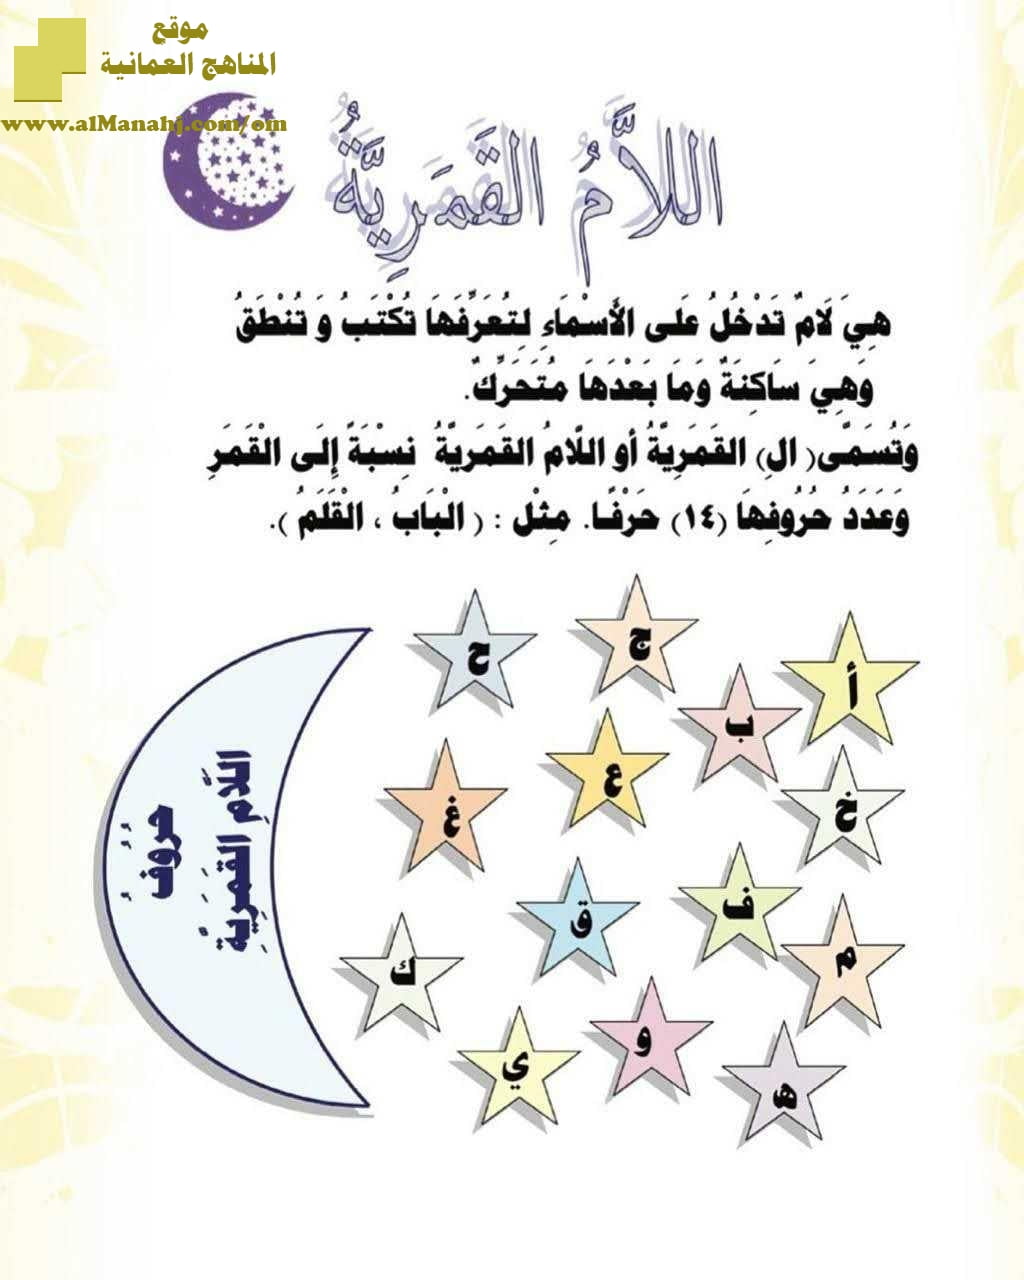 أوراق عمل لشرح اللام الشمسية واللام القمرية (لغة عربية) حلقة أولى